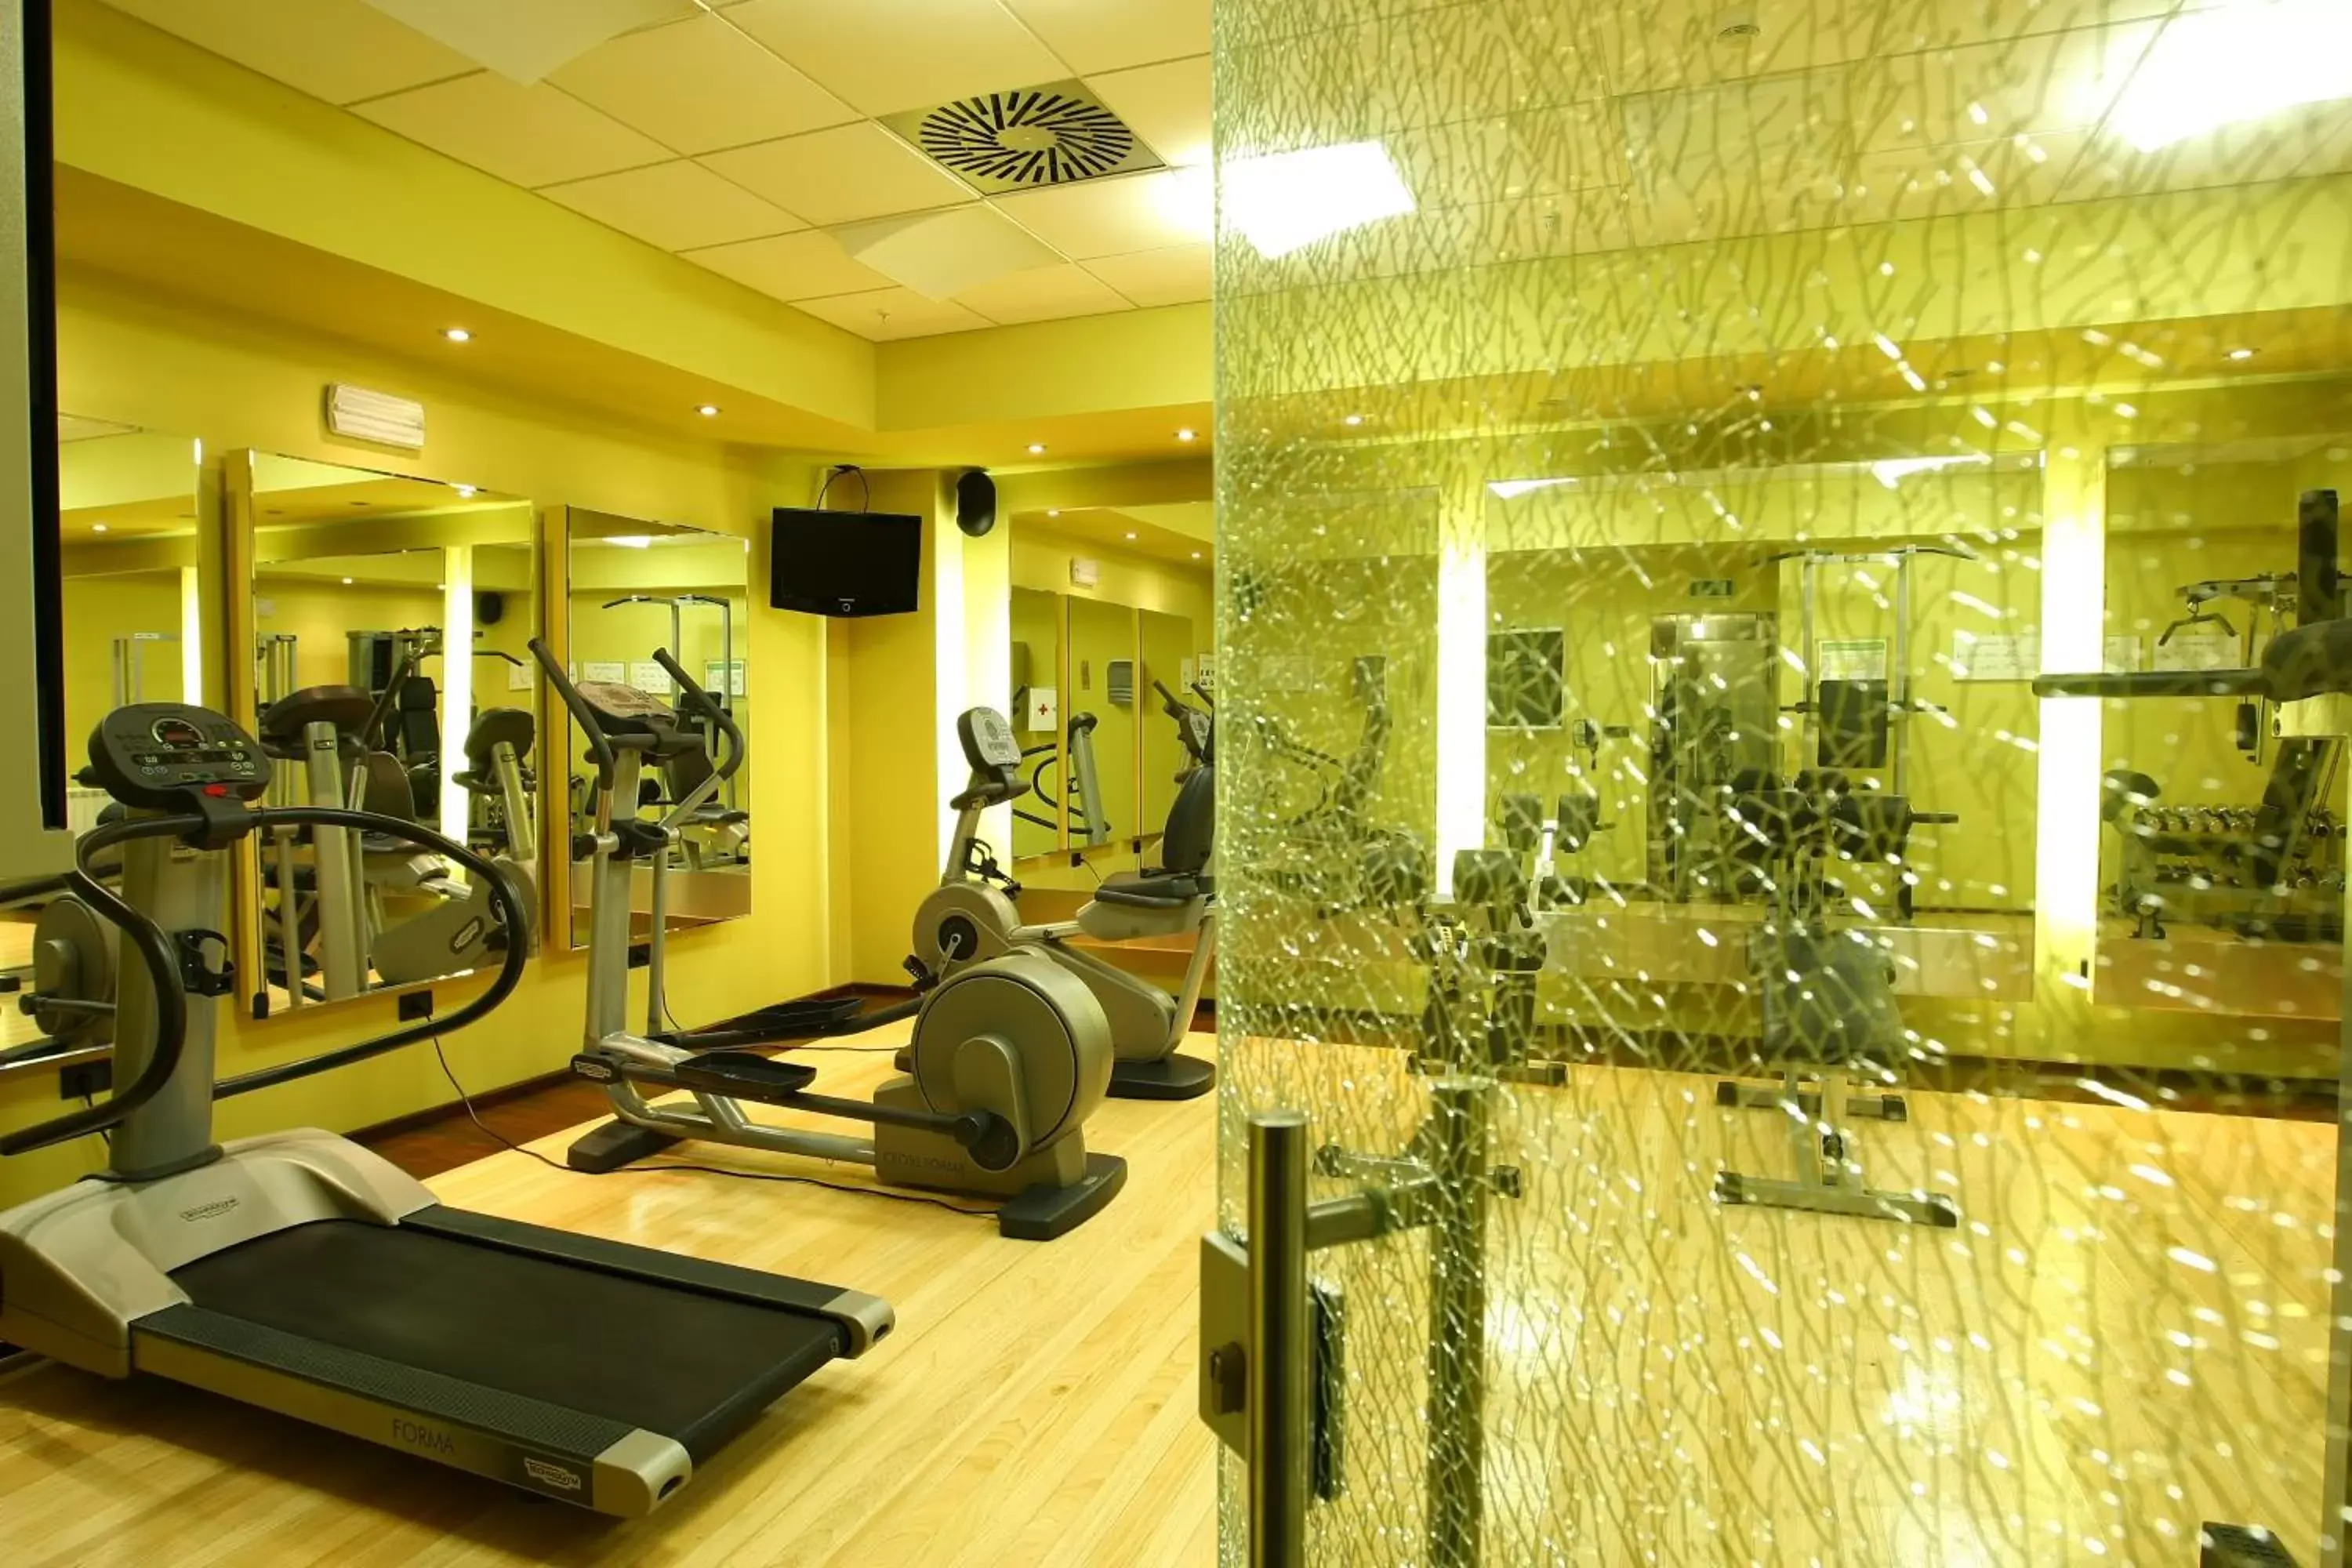 Fitness centre/facilities, Fitness Center/Facilities in Holiday Inn Belgrade, an IHG Hotel